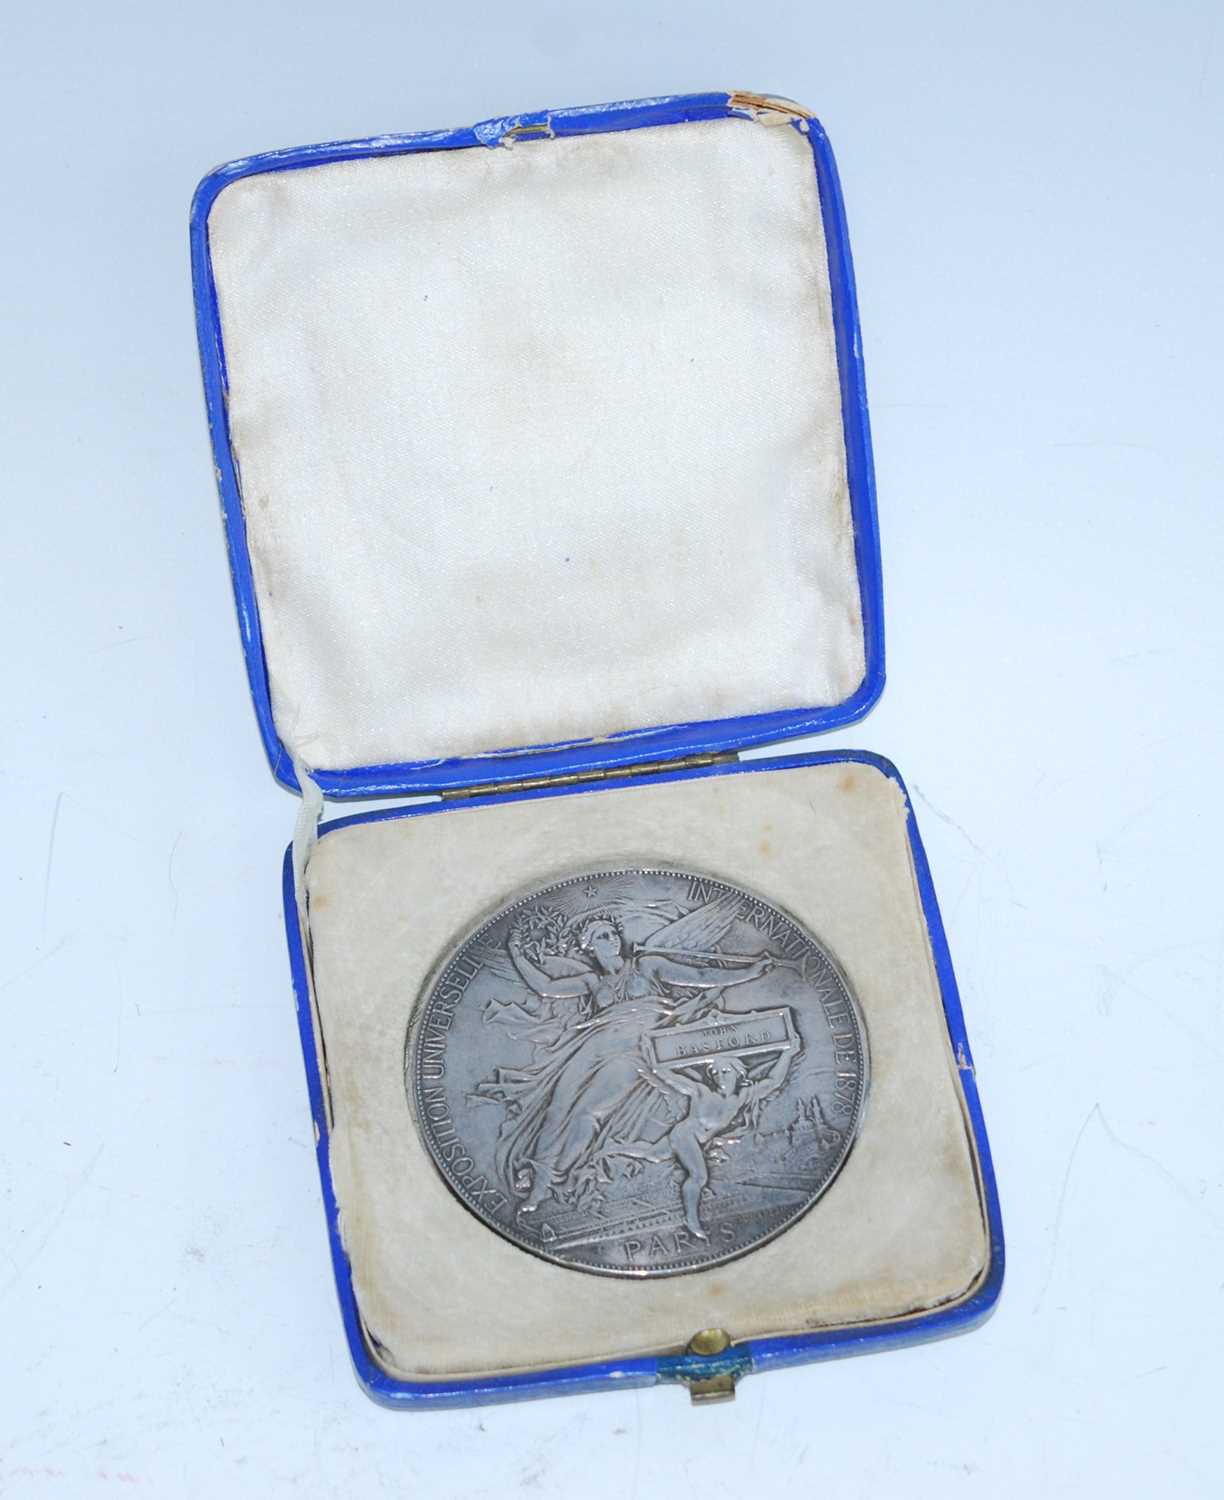 France, Exposition Universelle Internationale de Paris, 1878, Silver medal, by Jules-Clement